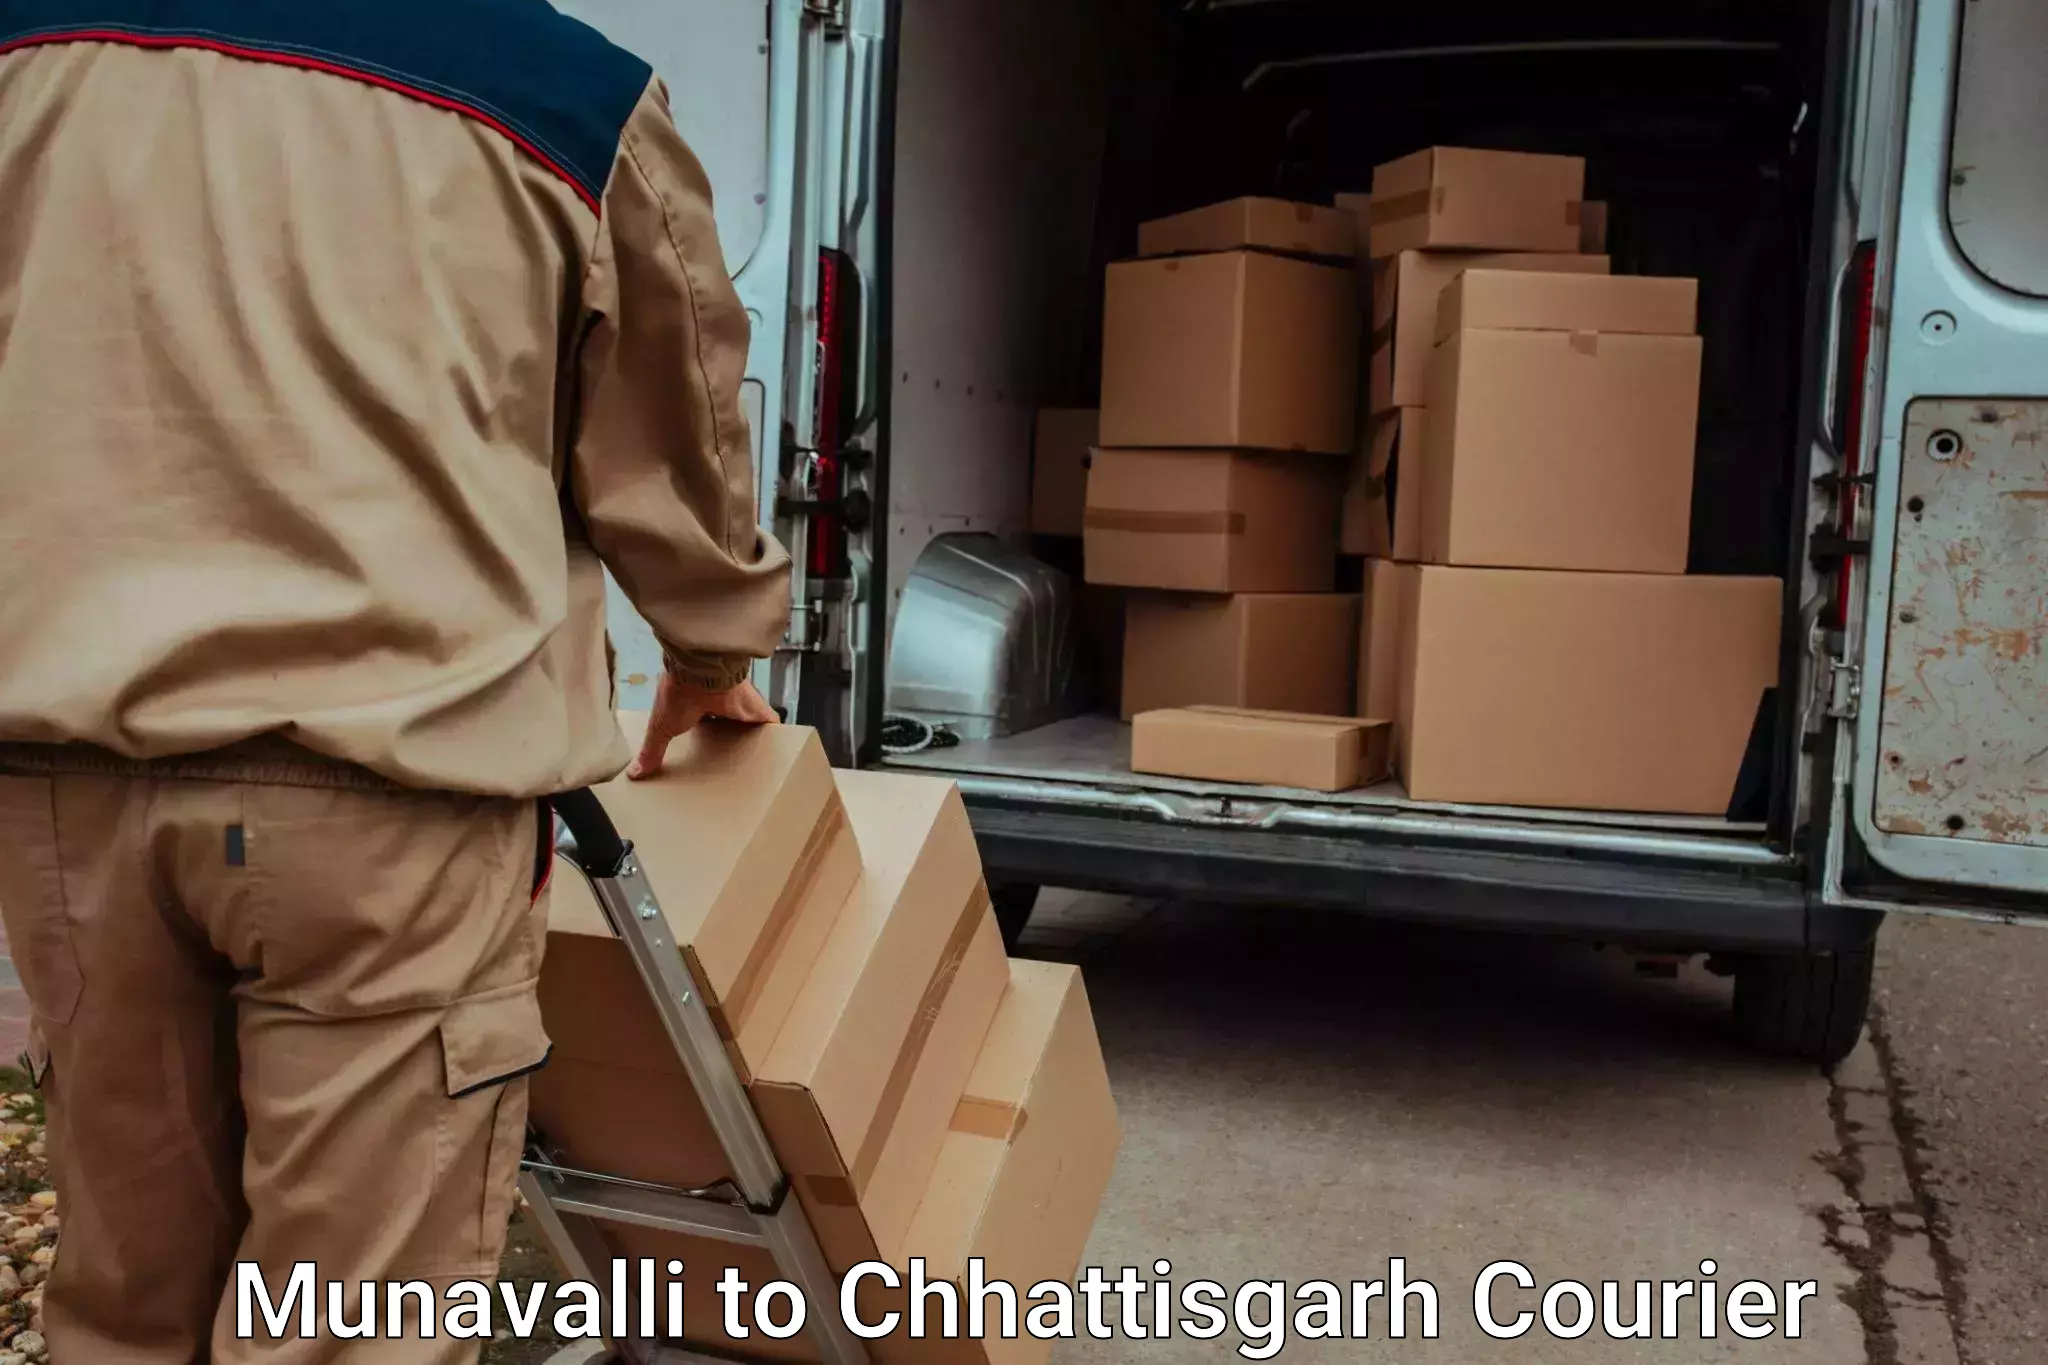 Baggage shipping service Munavalli to Lailunga